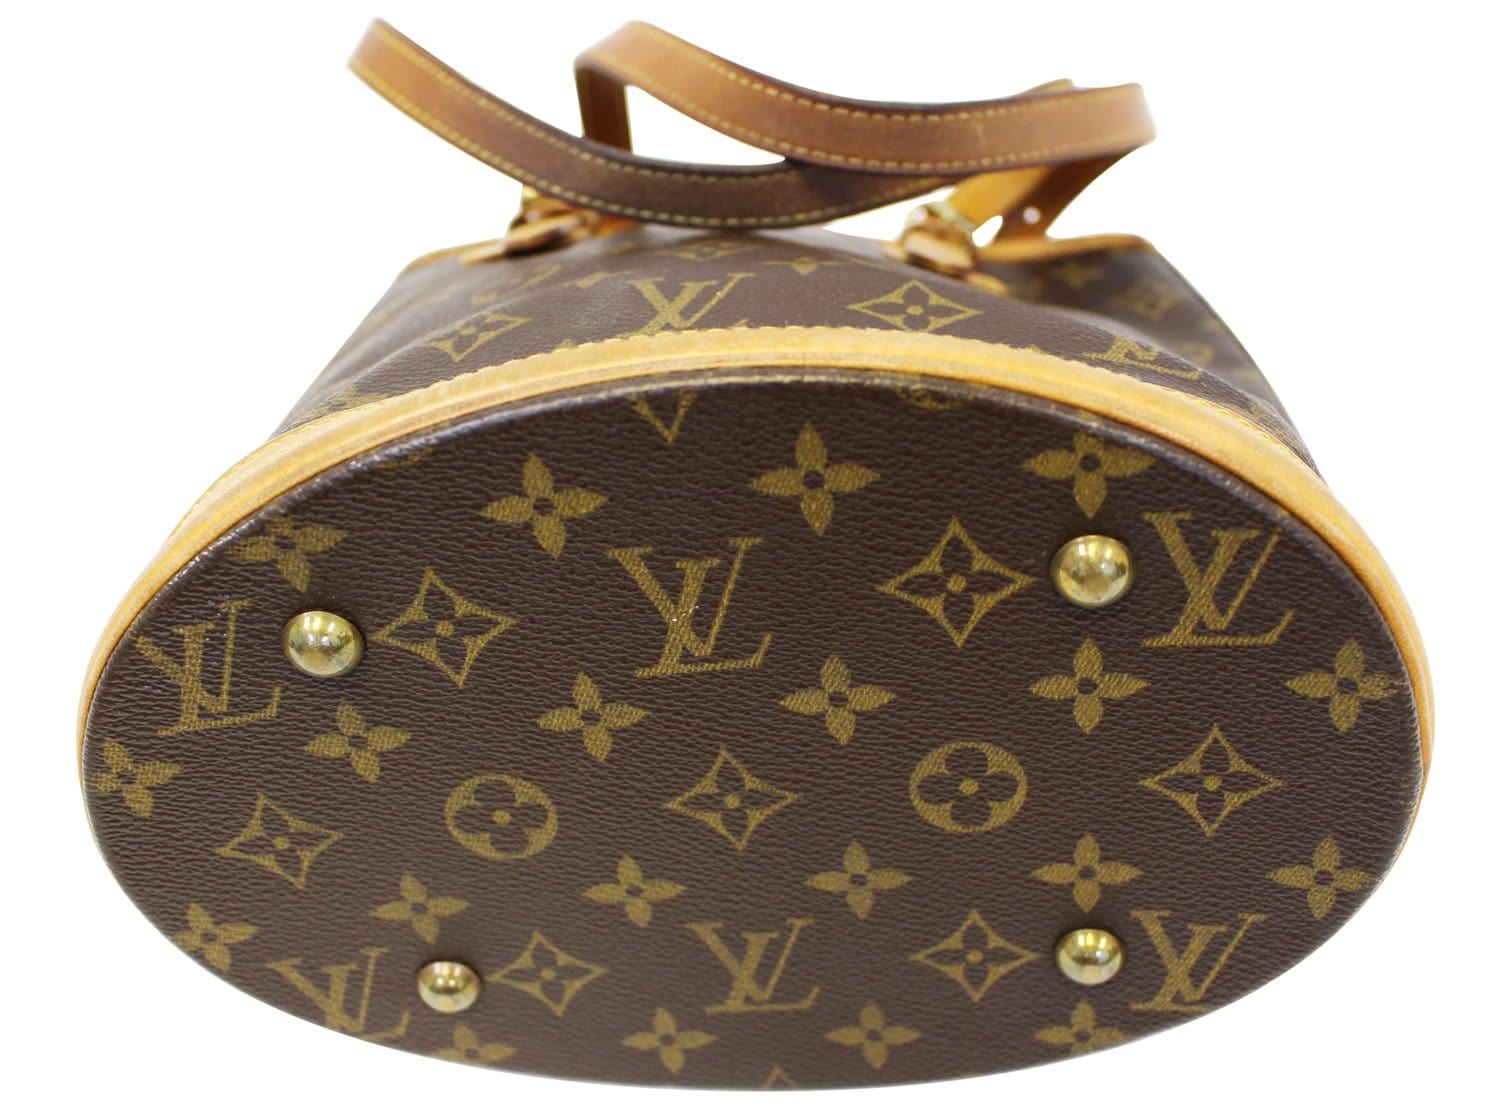 Louis Vuitton Néonoé Monogram Bucket Bag